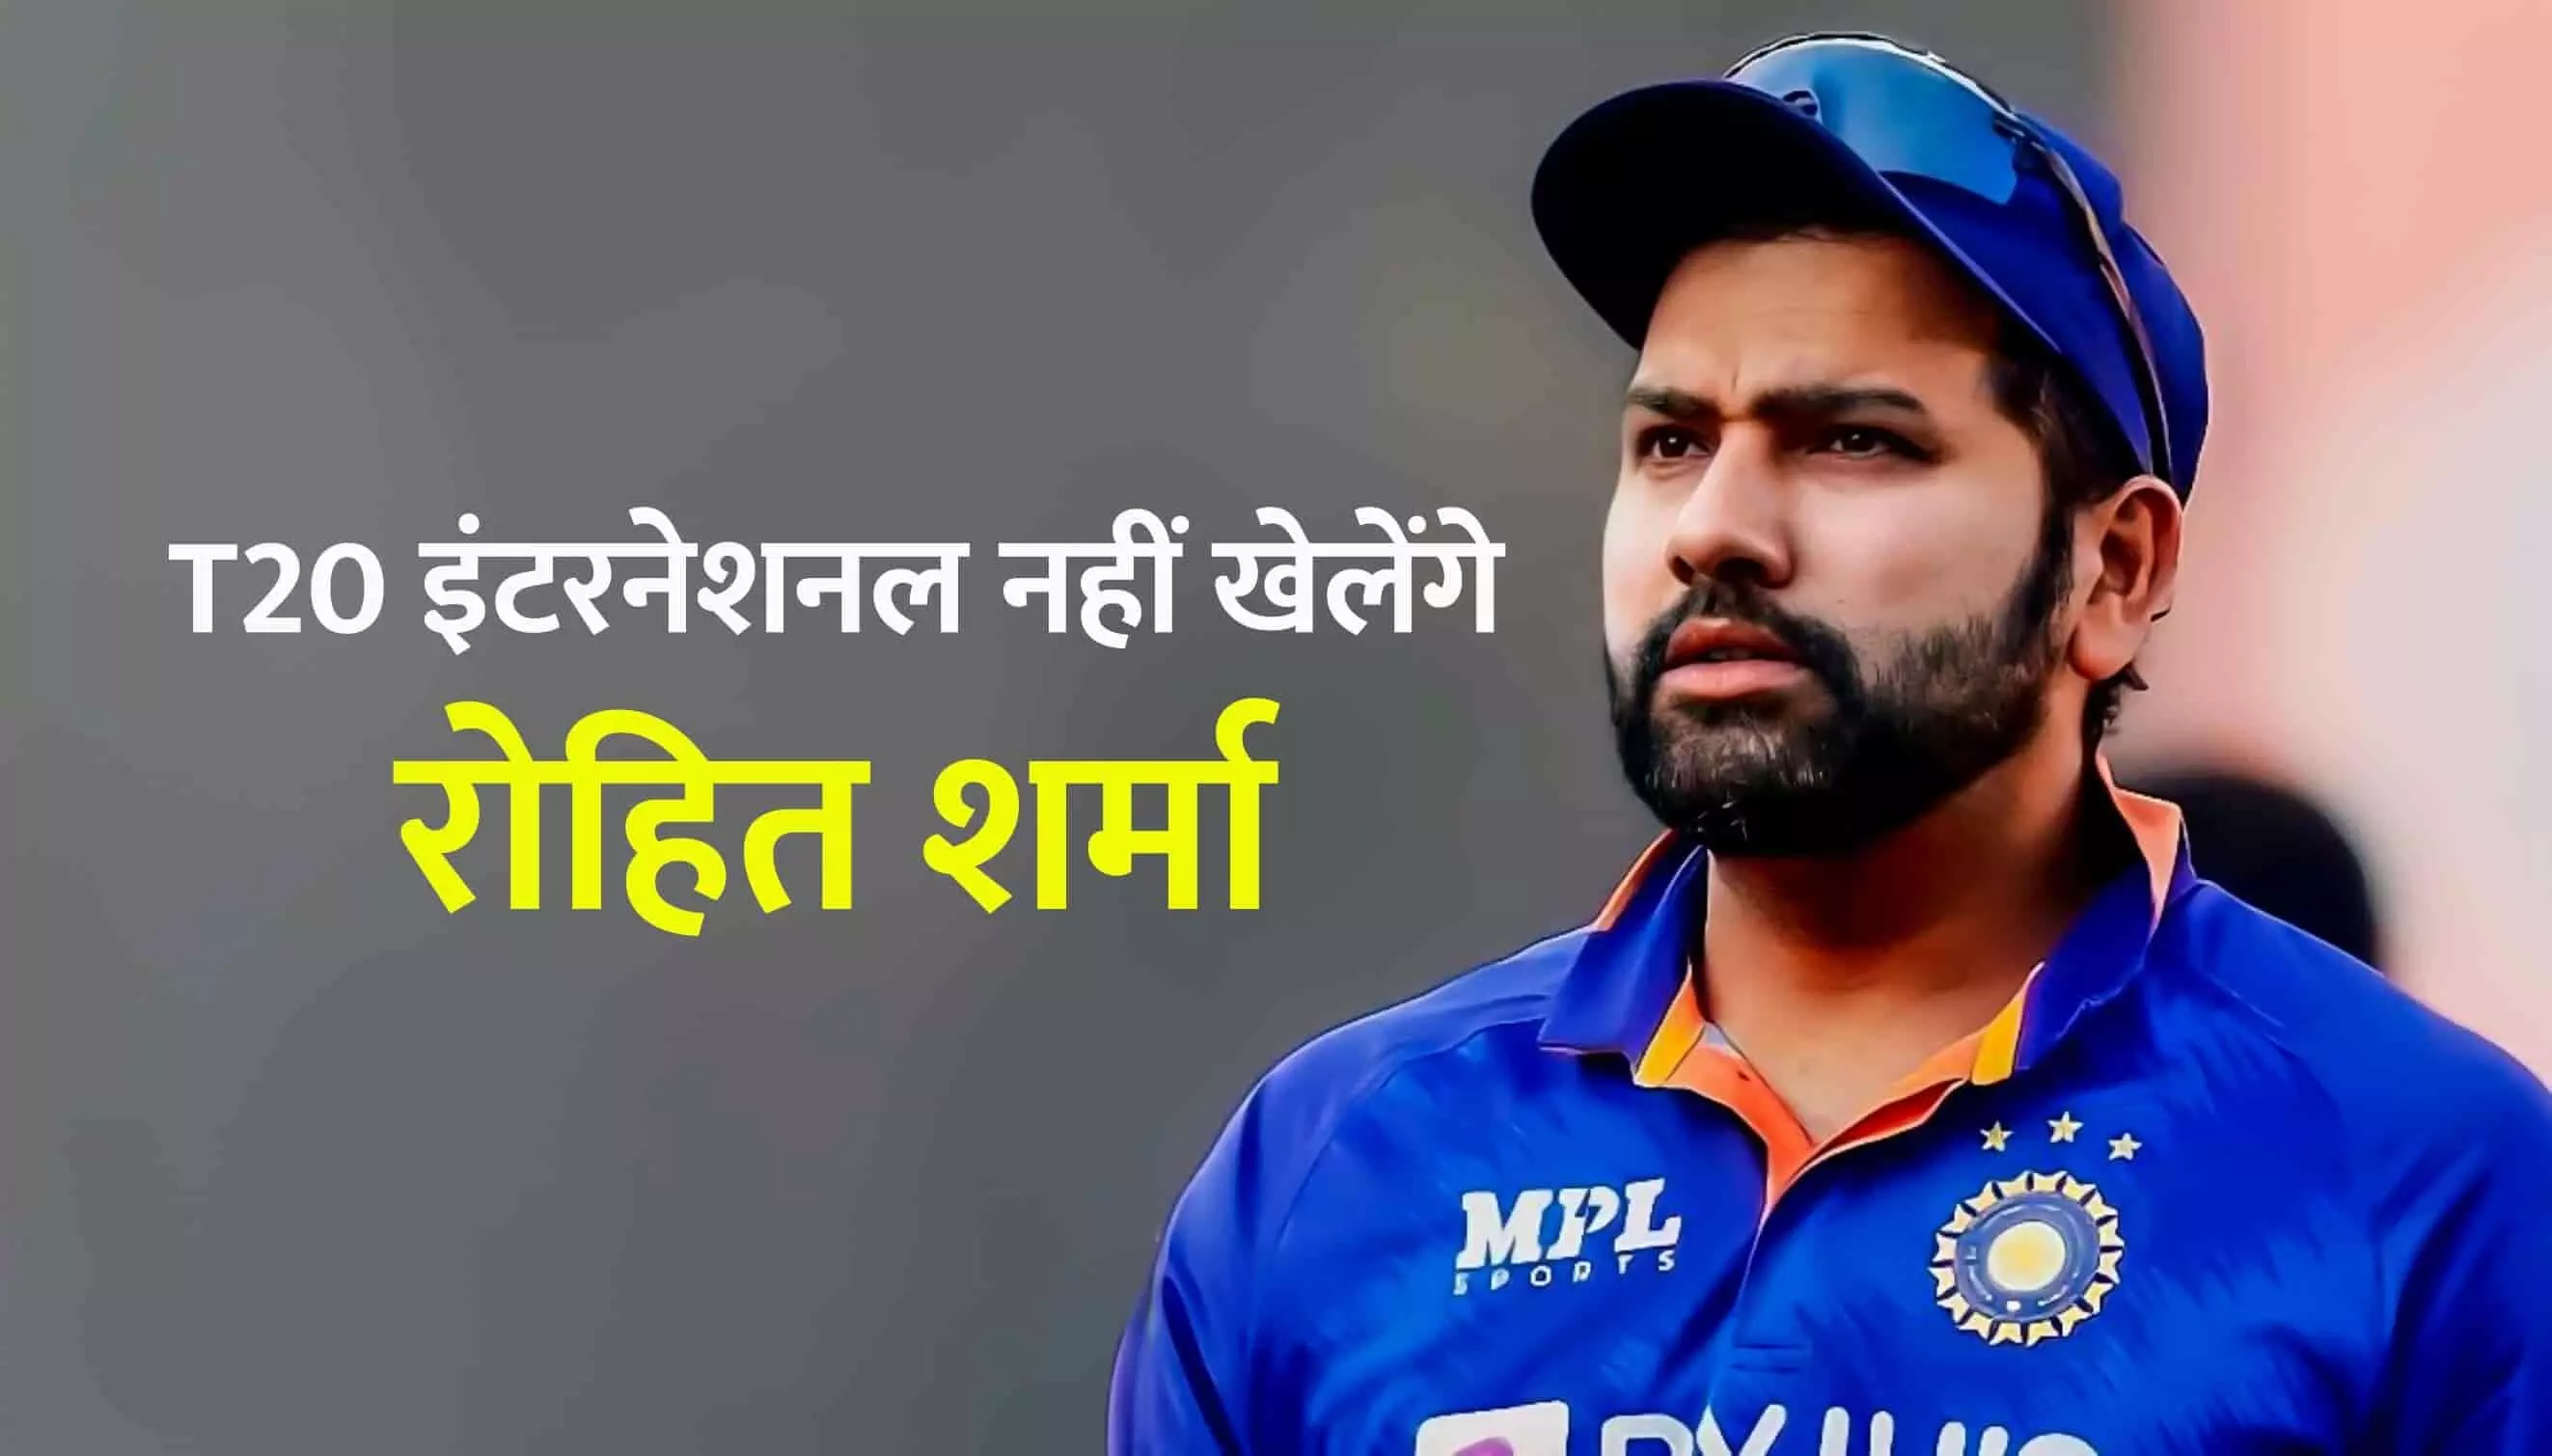 T20 इंटरनेशनल नहीं खेलेंगे रोहित शर्मा, टी-20 वर्ल्ड कप के बाद मैच नहीं खेले